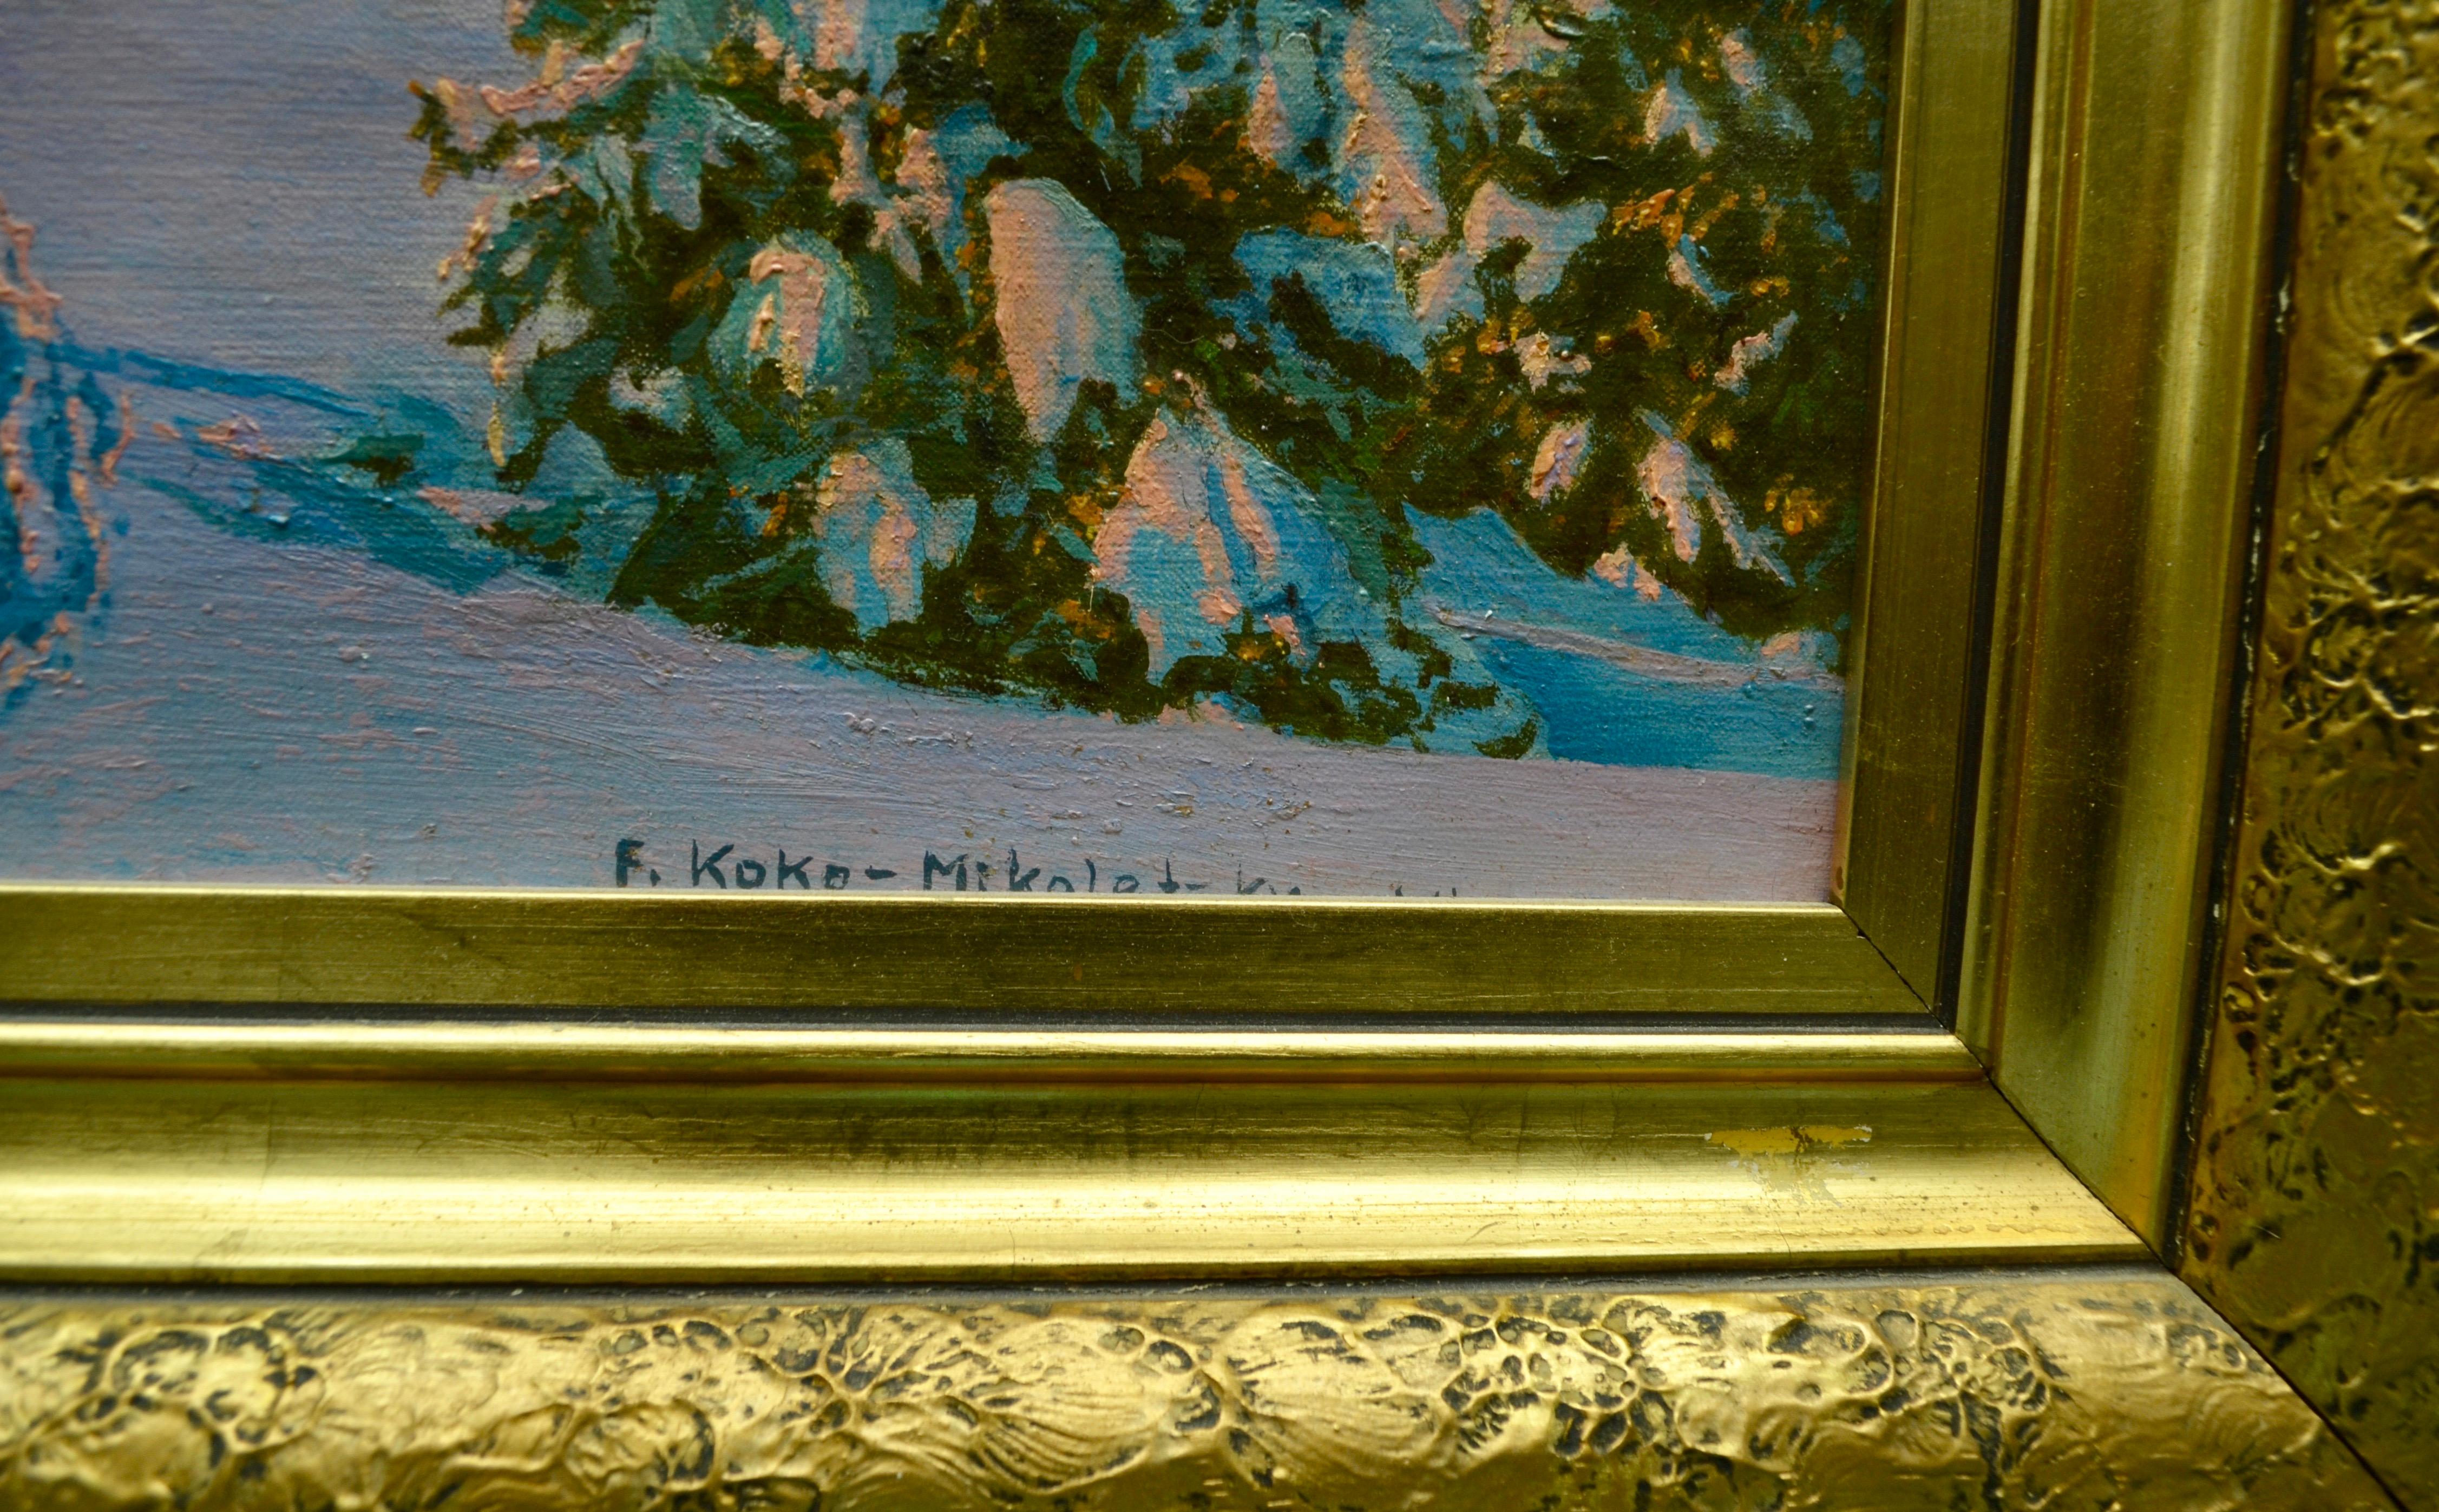 Painted Alpine Winter Scene by Austrian Artist Friedrich Albin Koko-Mikoletzky